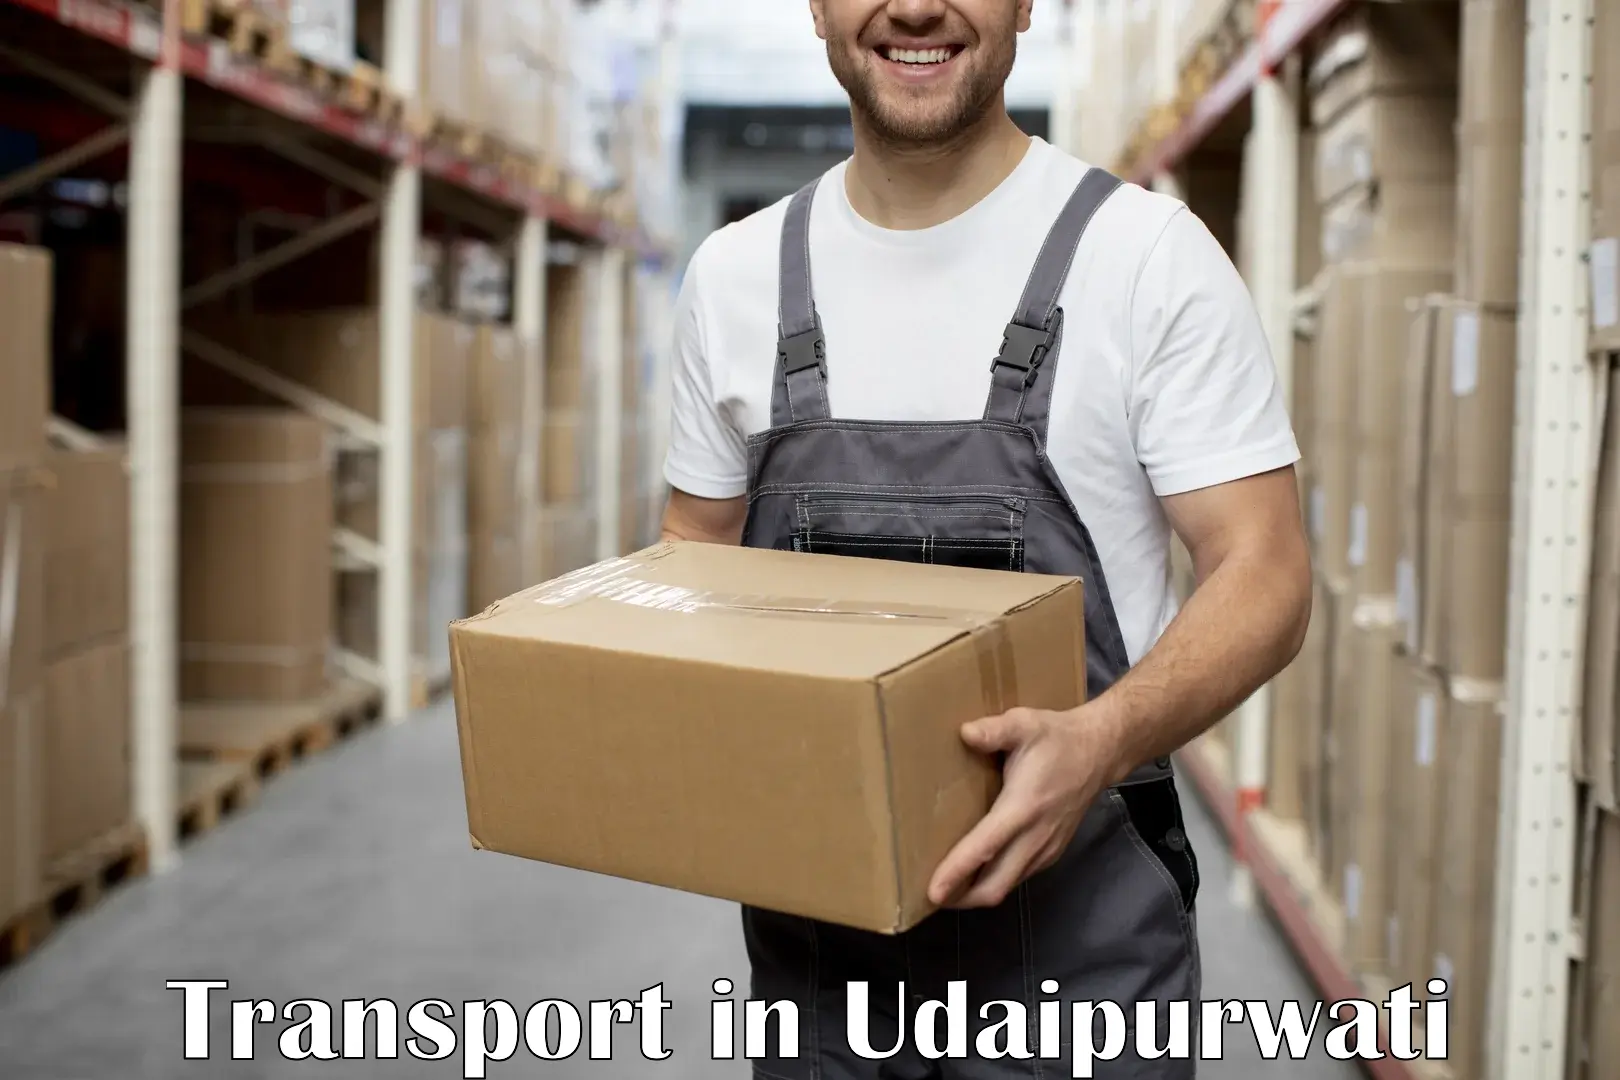 Land transport services in Udaipurwati